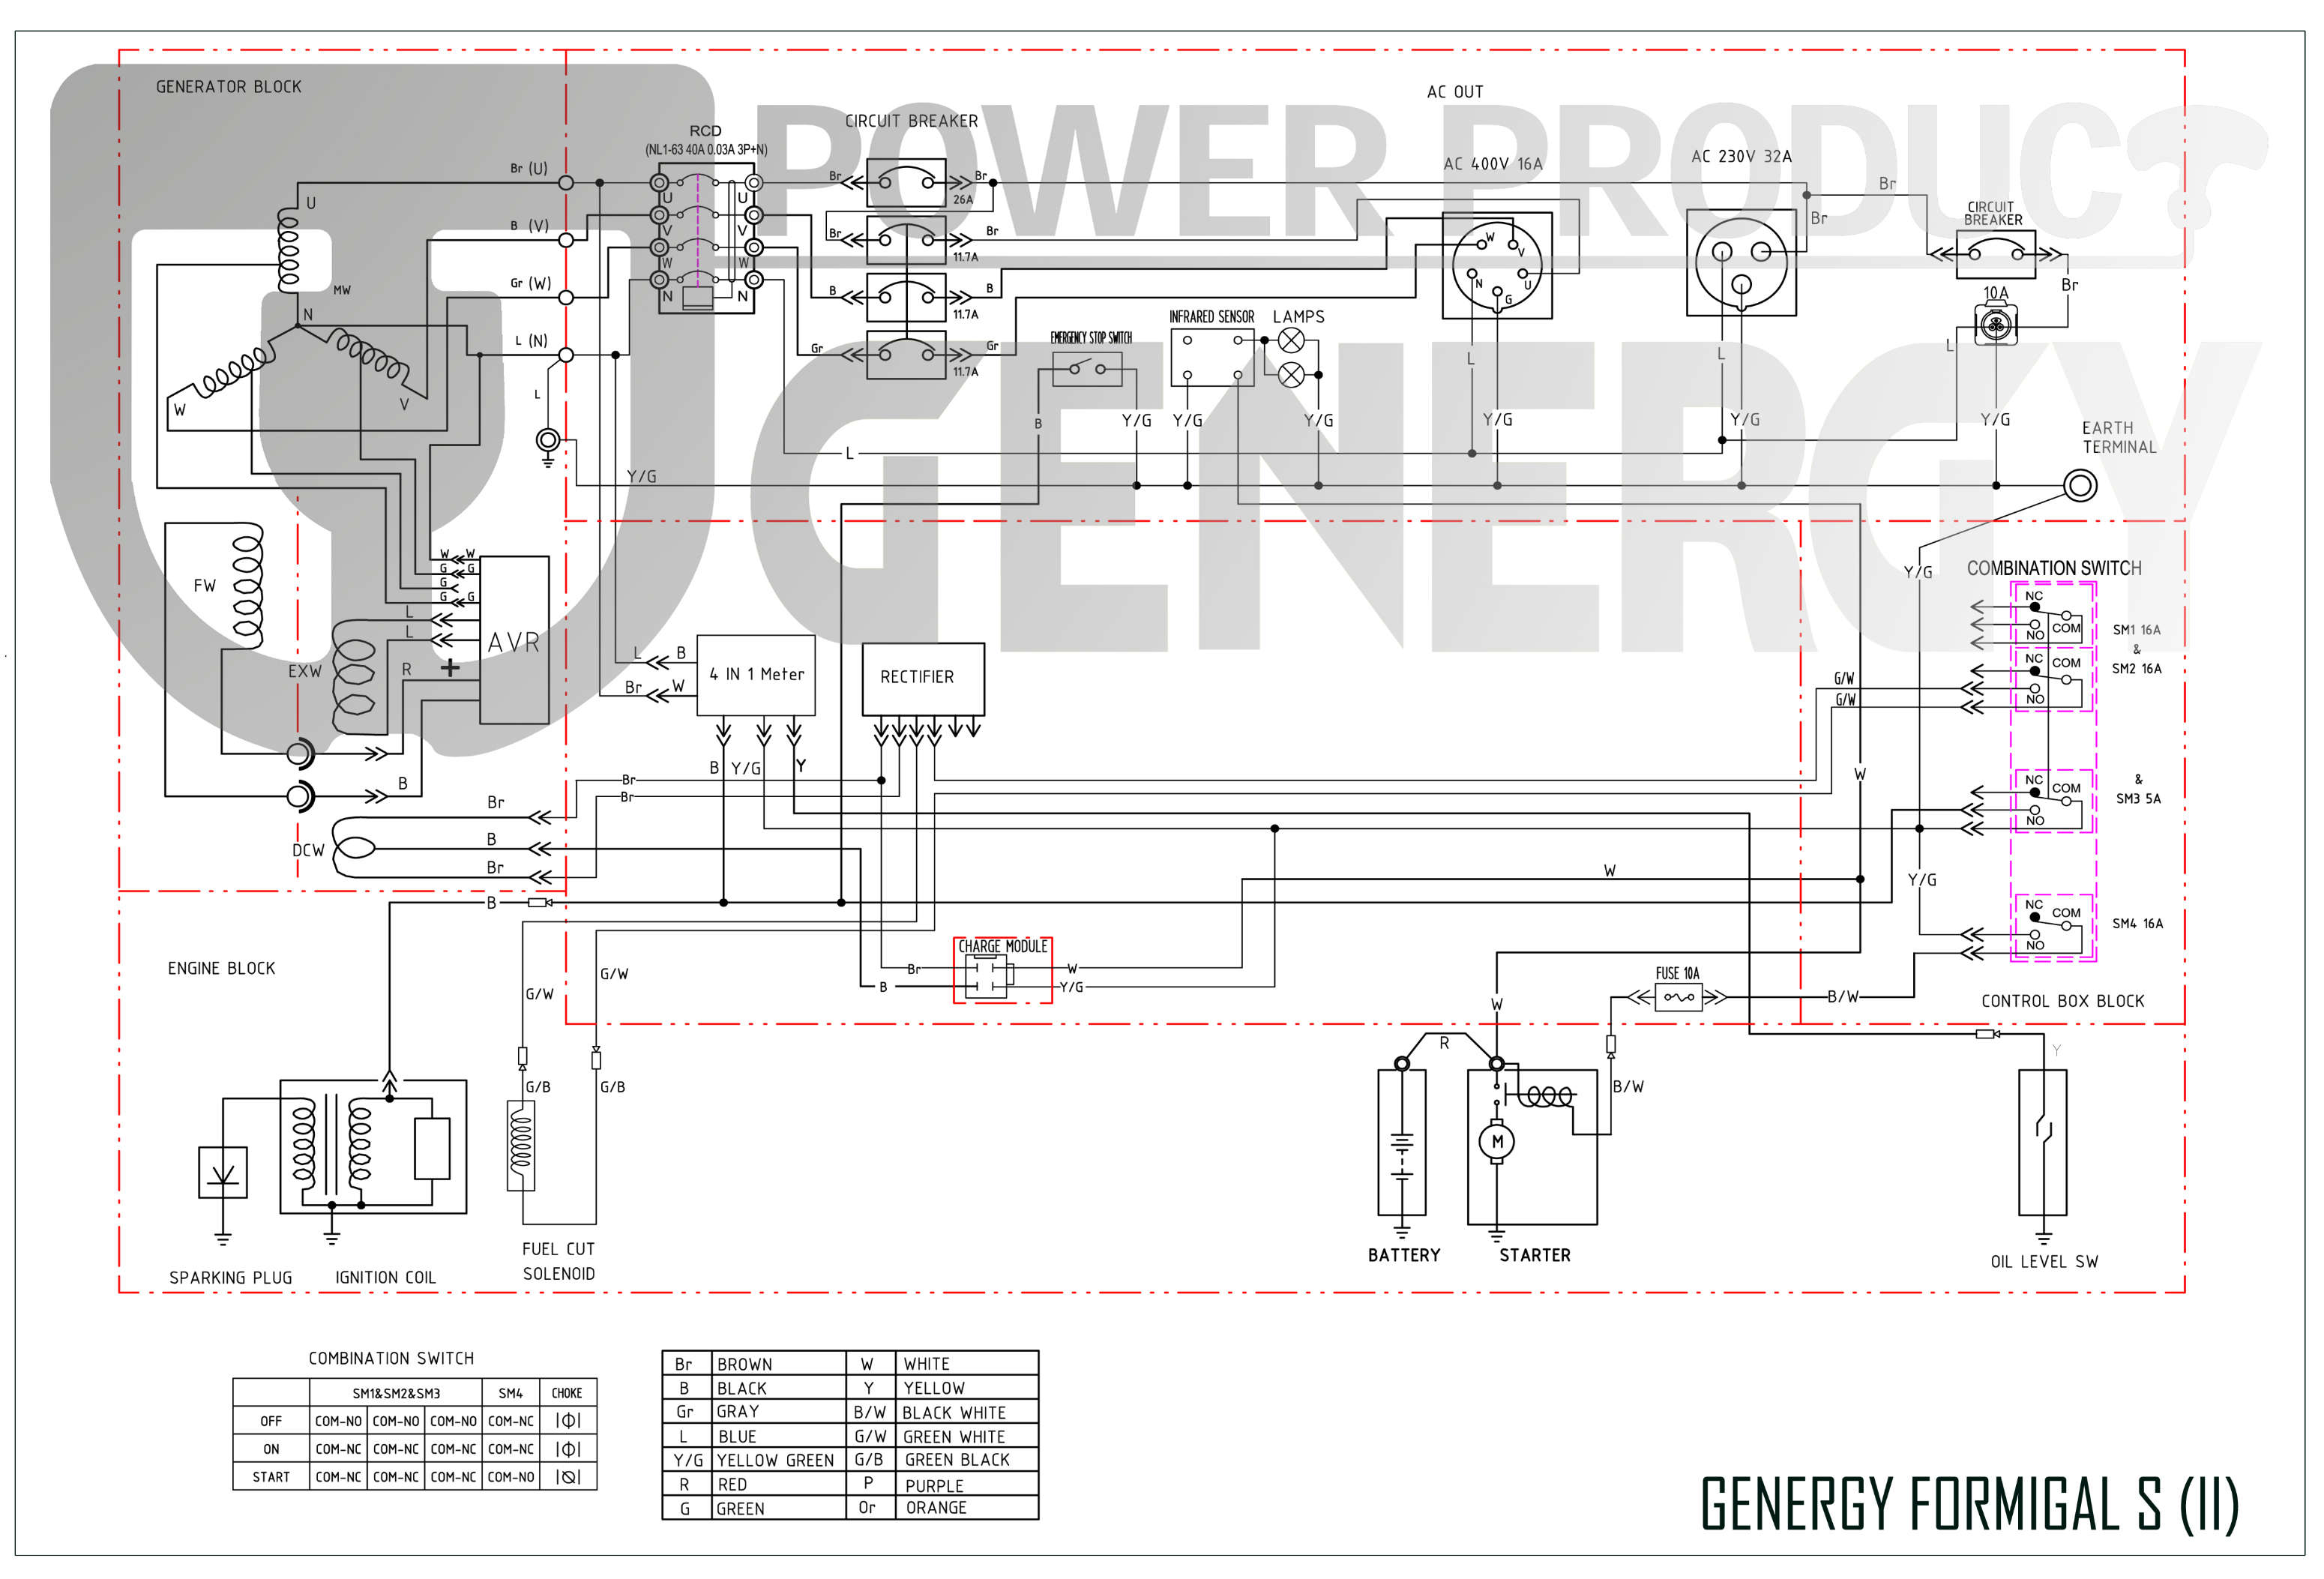 Formigal-S Generator Diagram